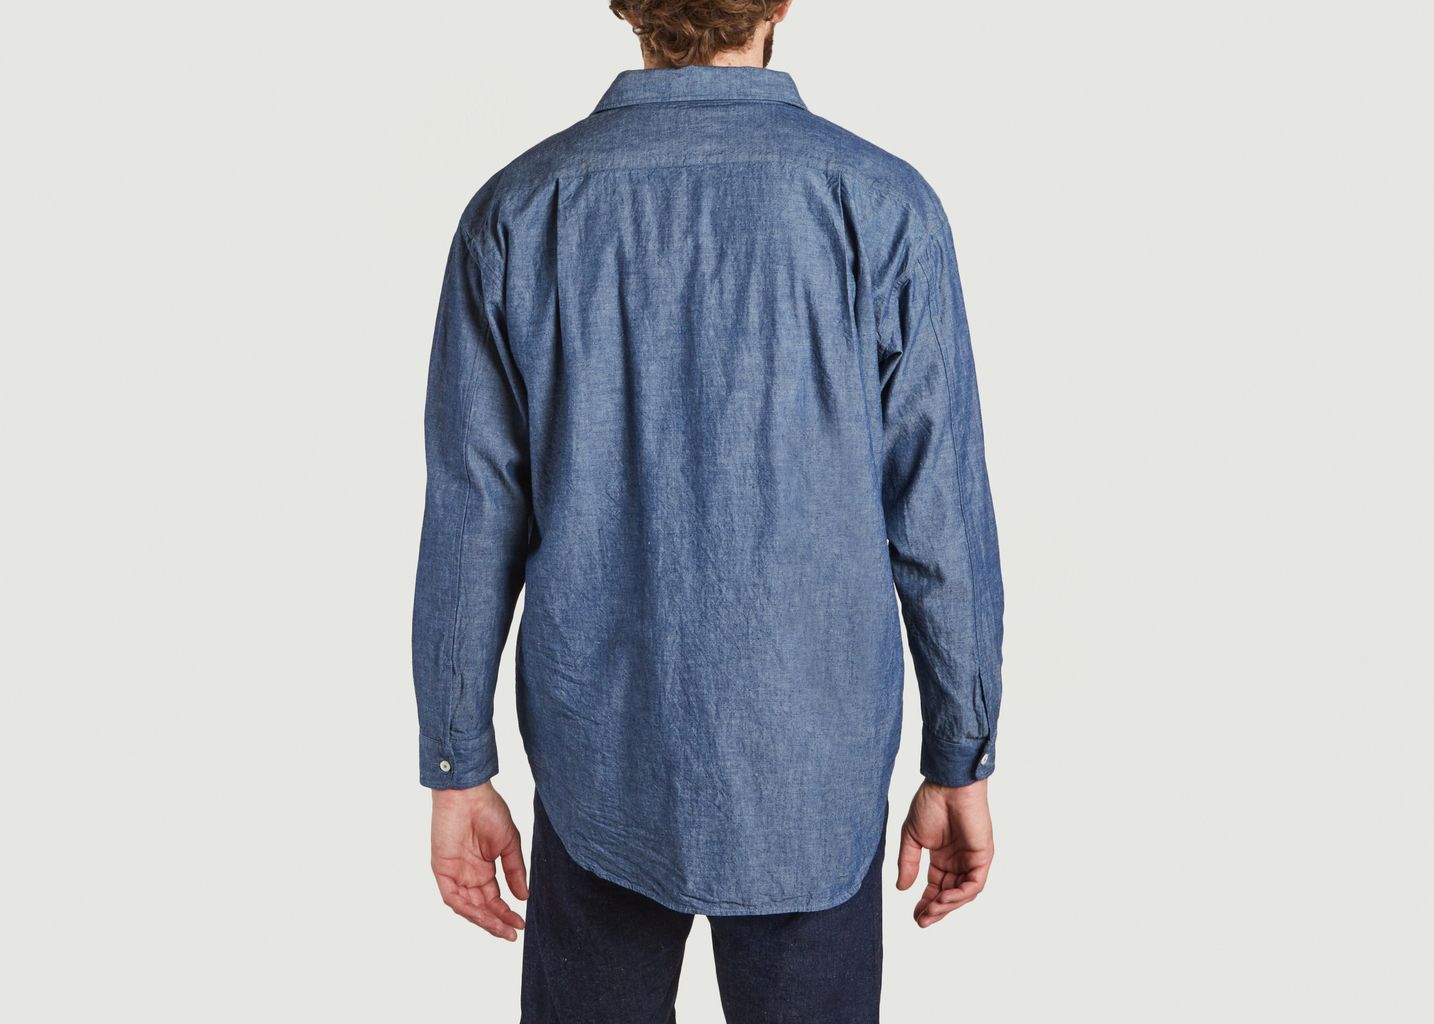 Deli cotton shirt - Japan Blue Jeans